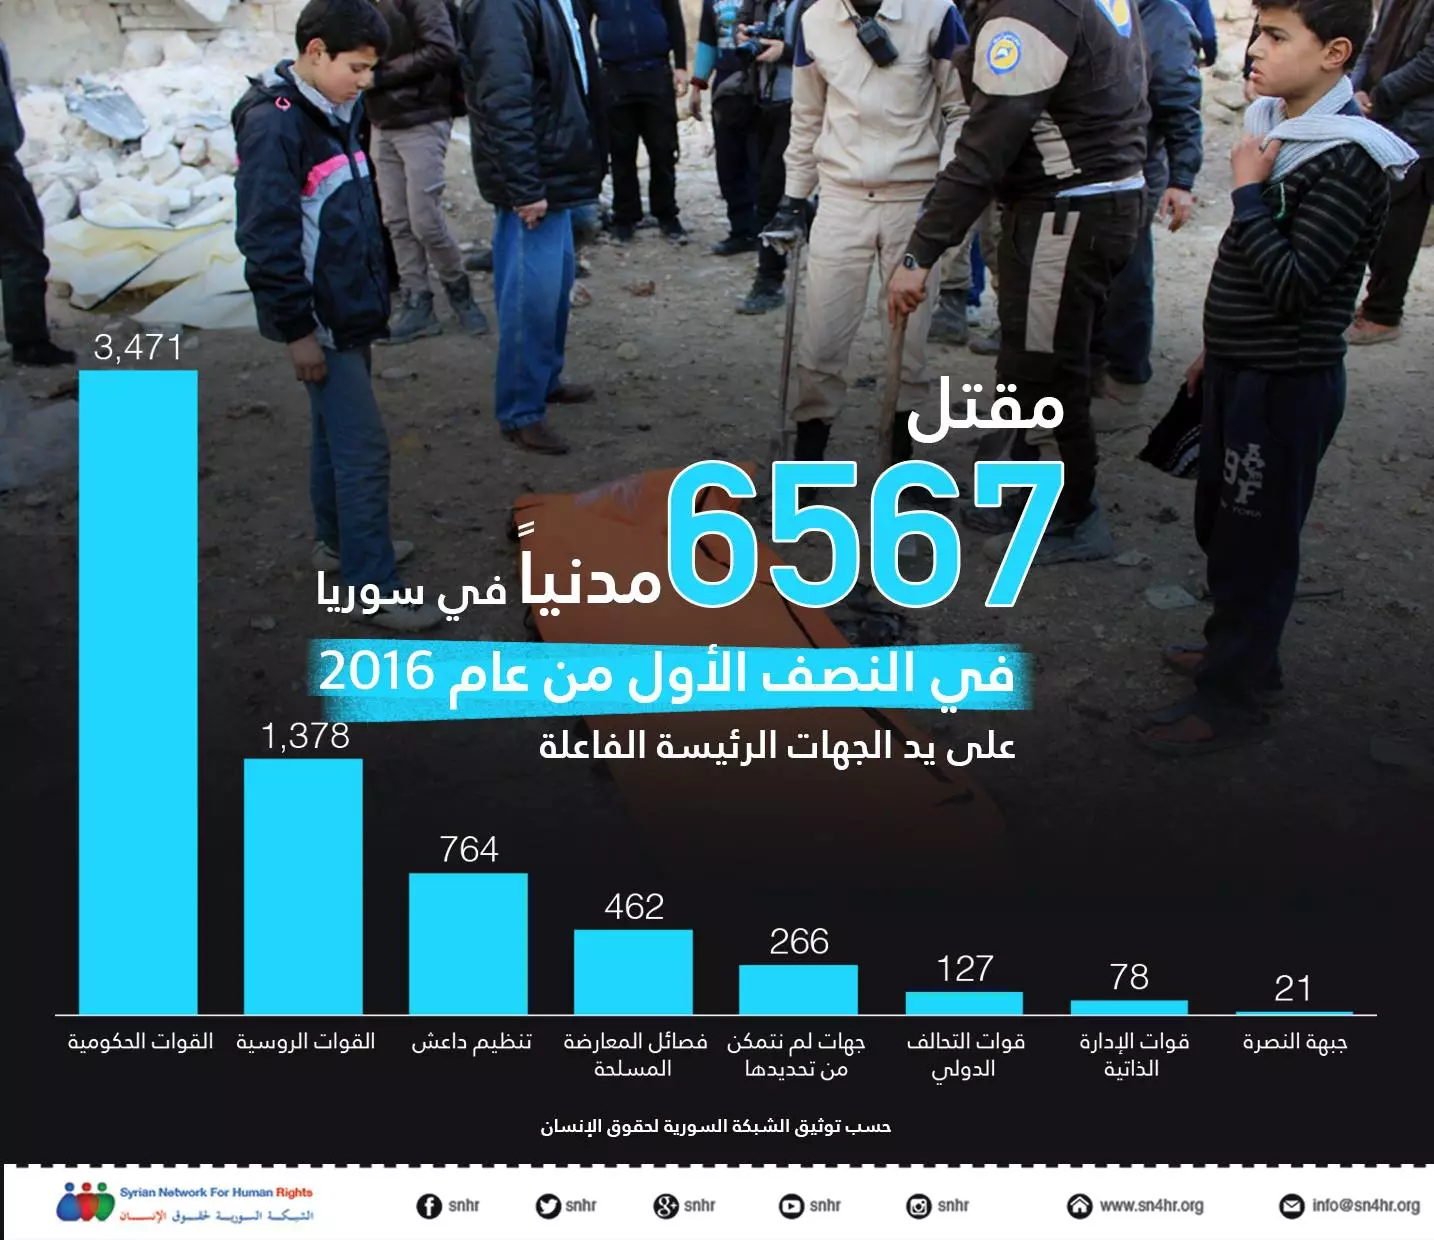 مقتل 6567 مدنياً في سوريا في النصف الأول من عام 2016